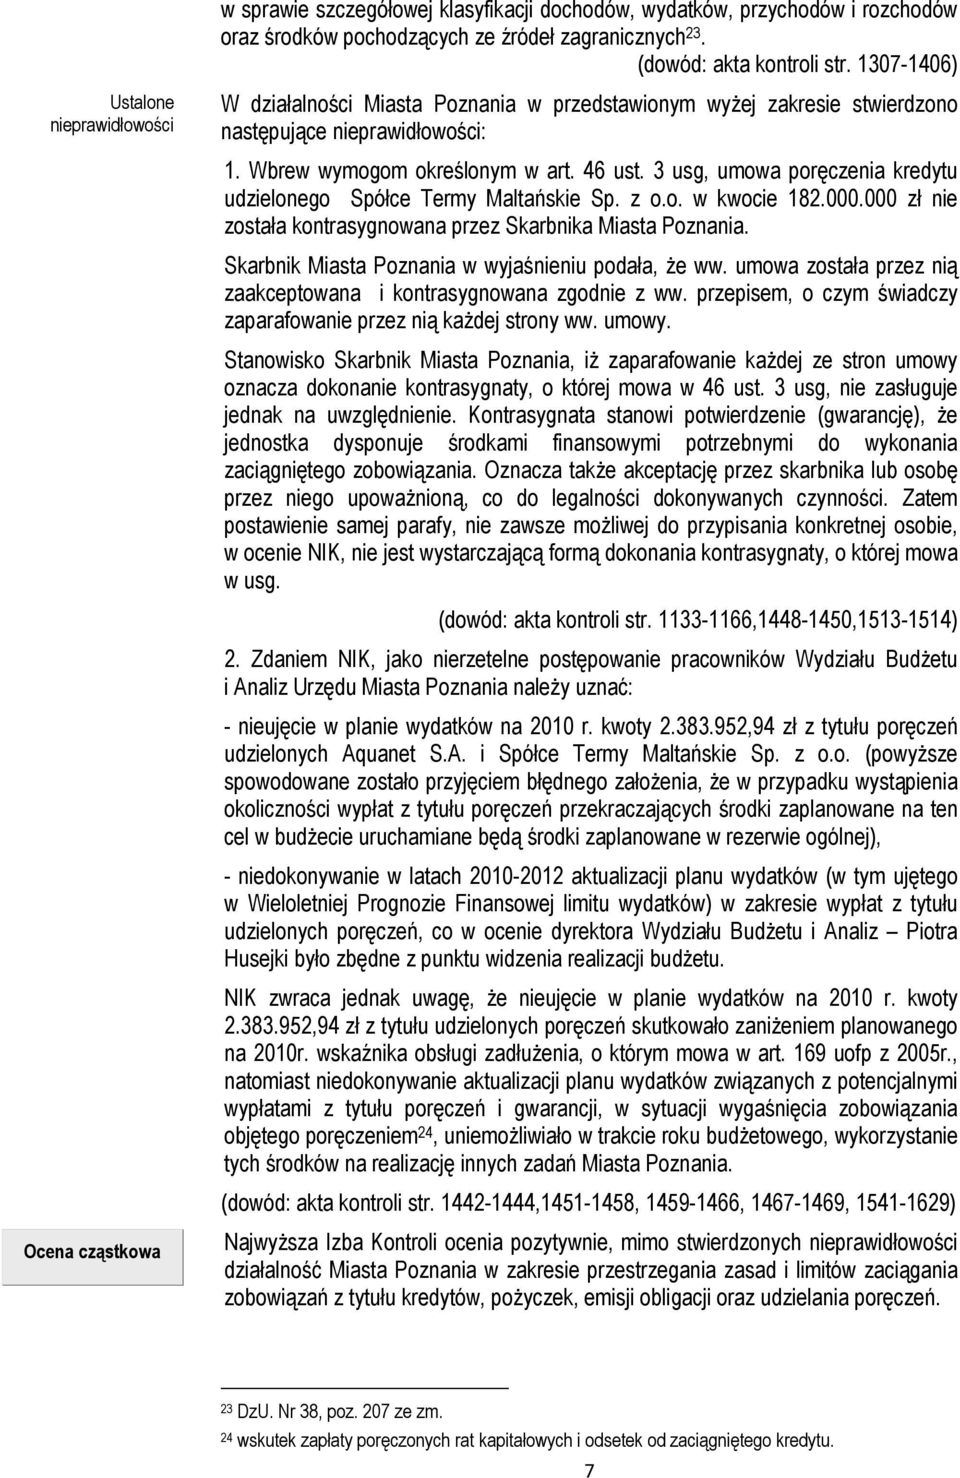 3 usg, umowa poręczenia kredytu udzielonego Spółce Termy Maltańskie Sp. z o.o. w kwocie 182.000.000 zł nie została kontrasygnowana przez Skarbnika Miasta Poznania.